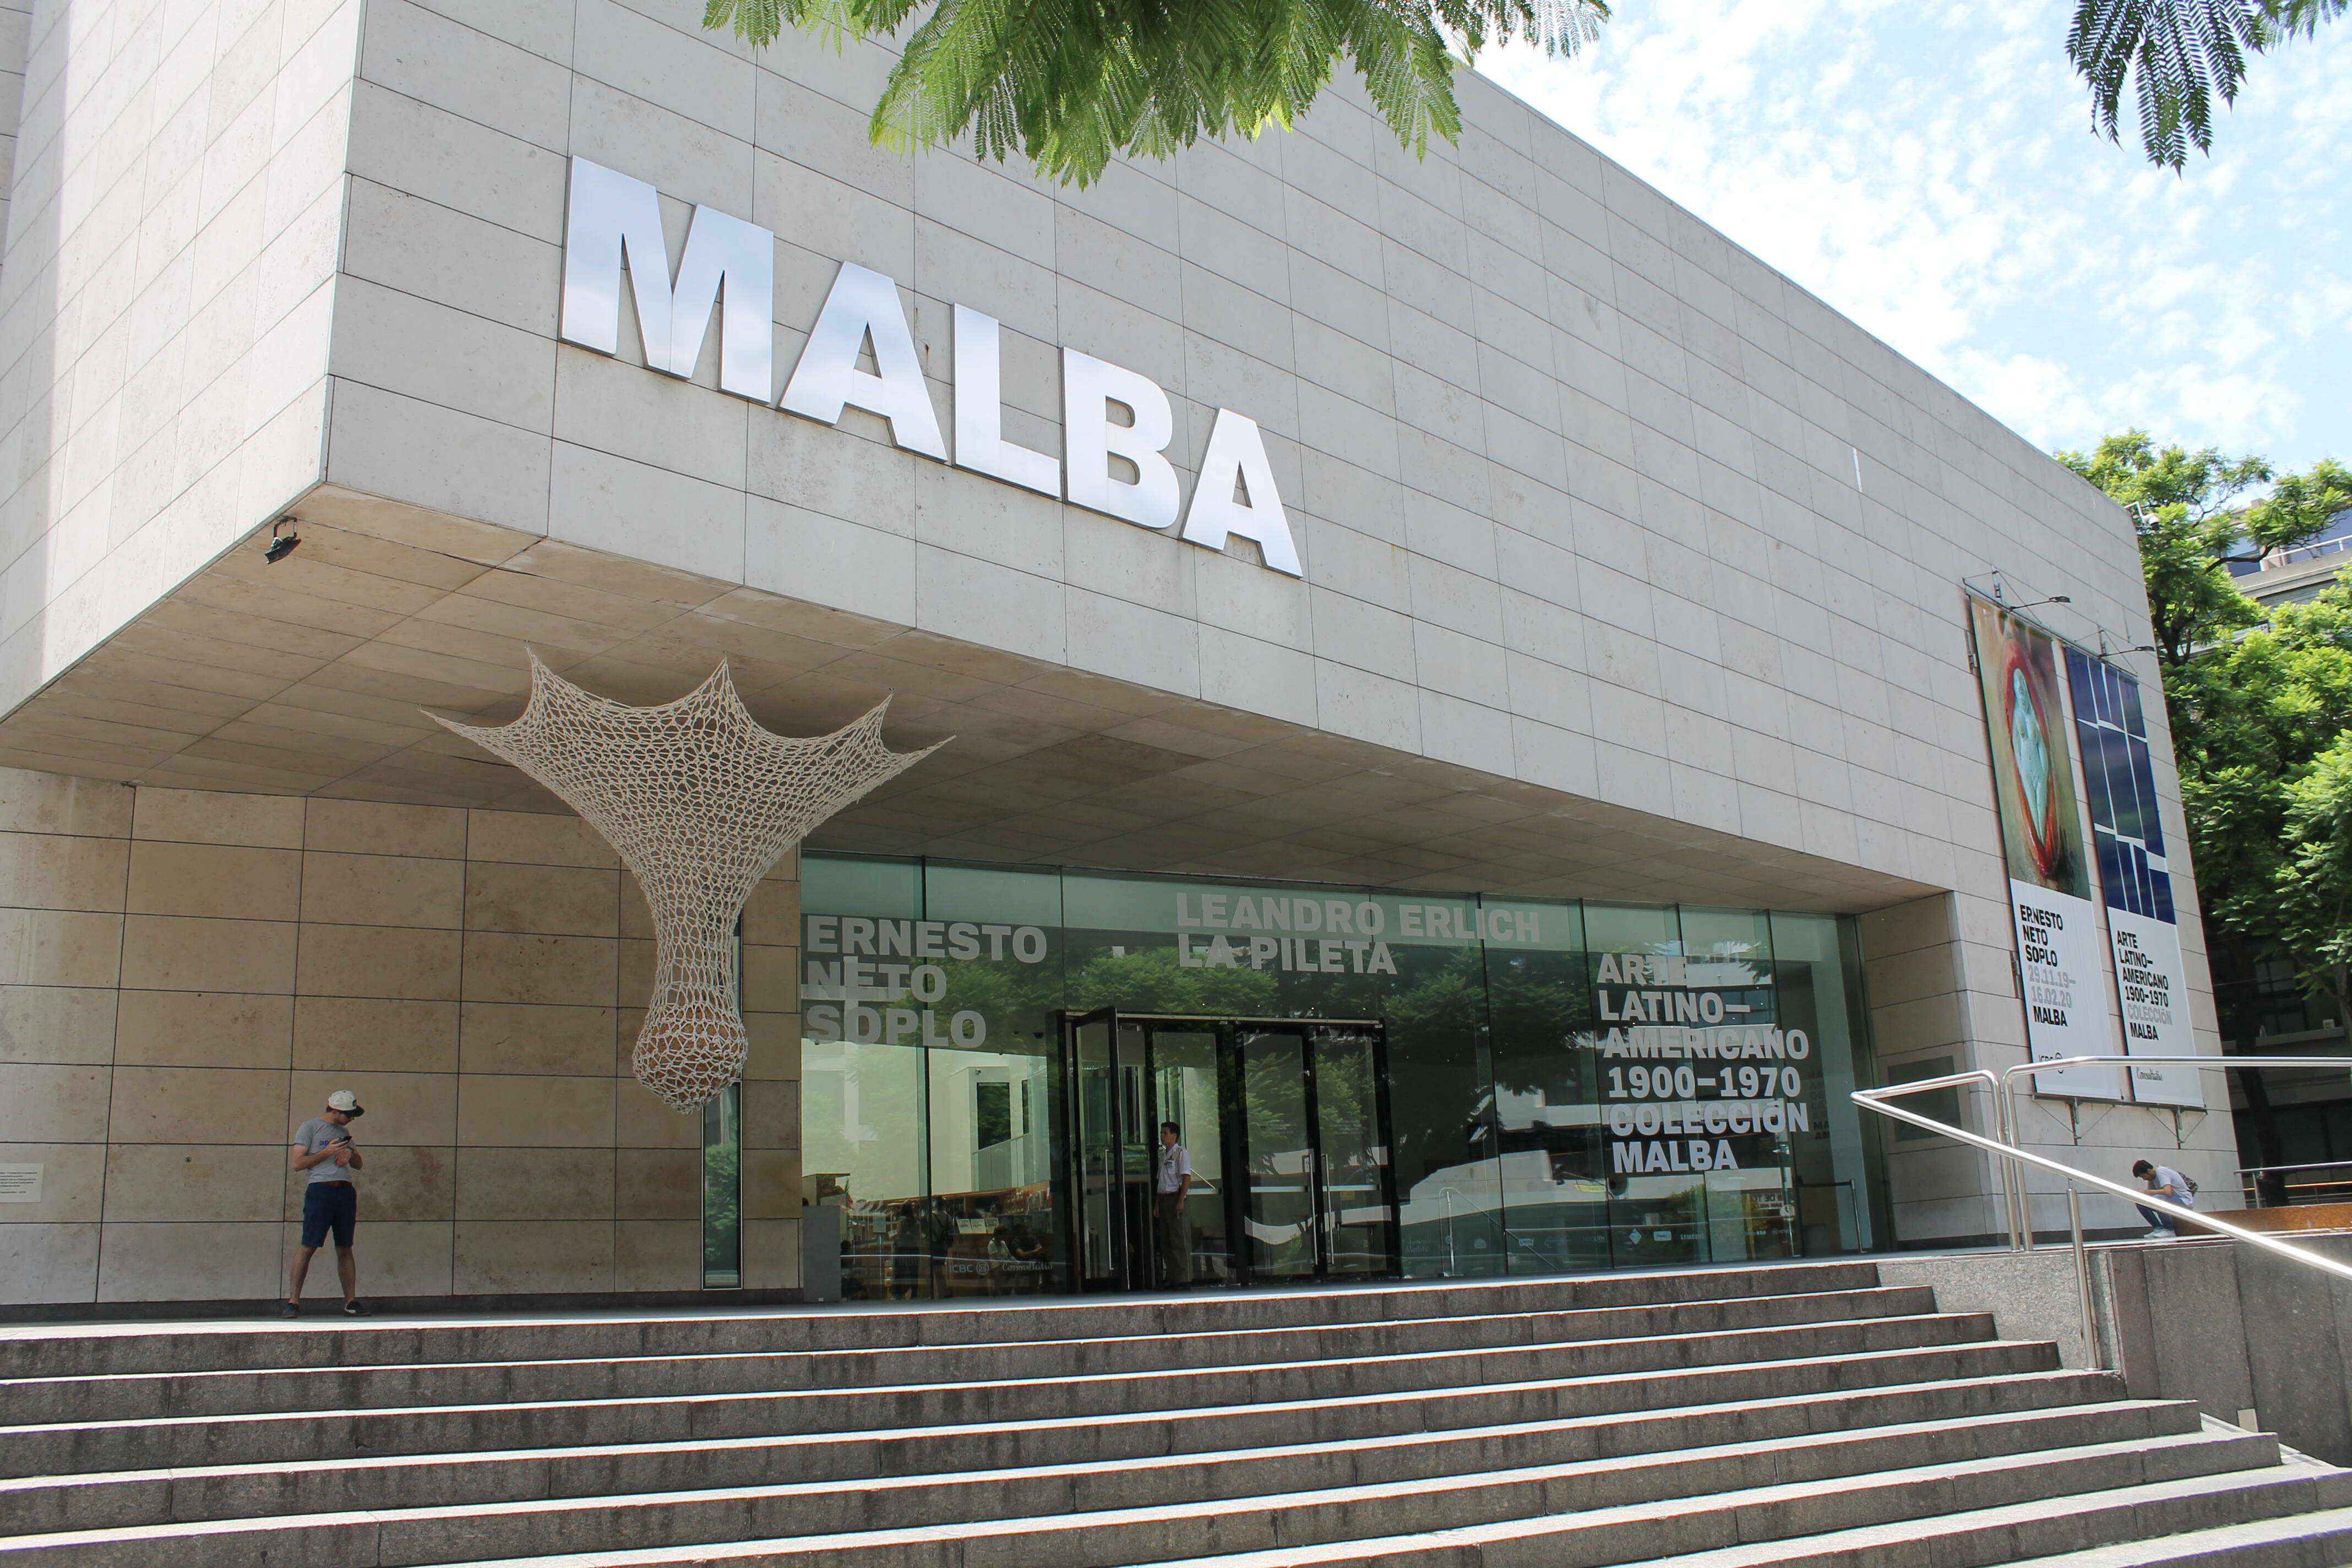 O museu Malba é um dos mais tradicionais de Buenos Aires. Lá está a obra Abaporu, de Tarsila do Amaral. Foto: Flavia Matos/ IG